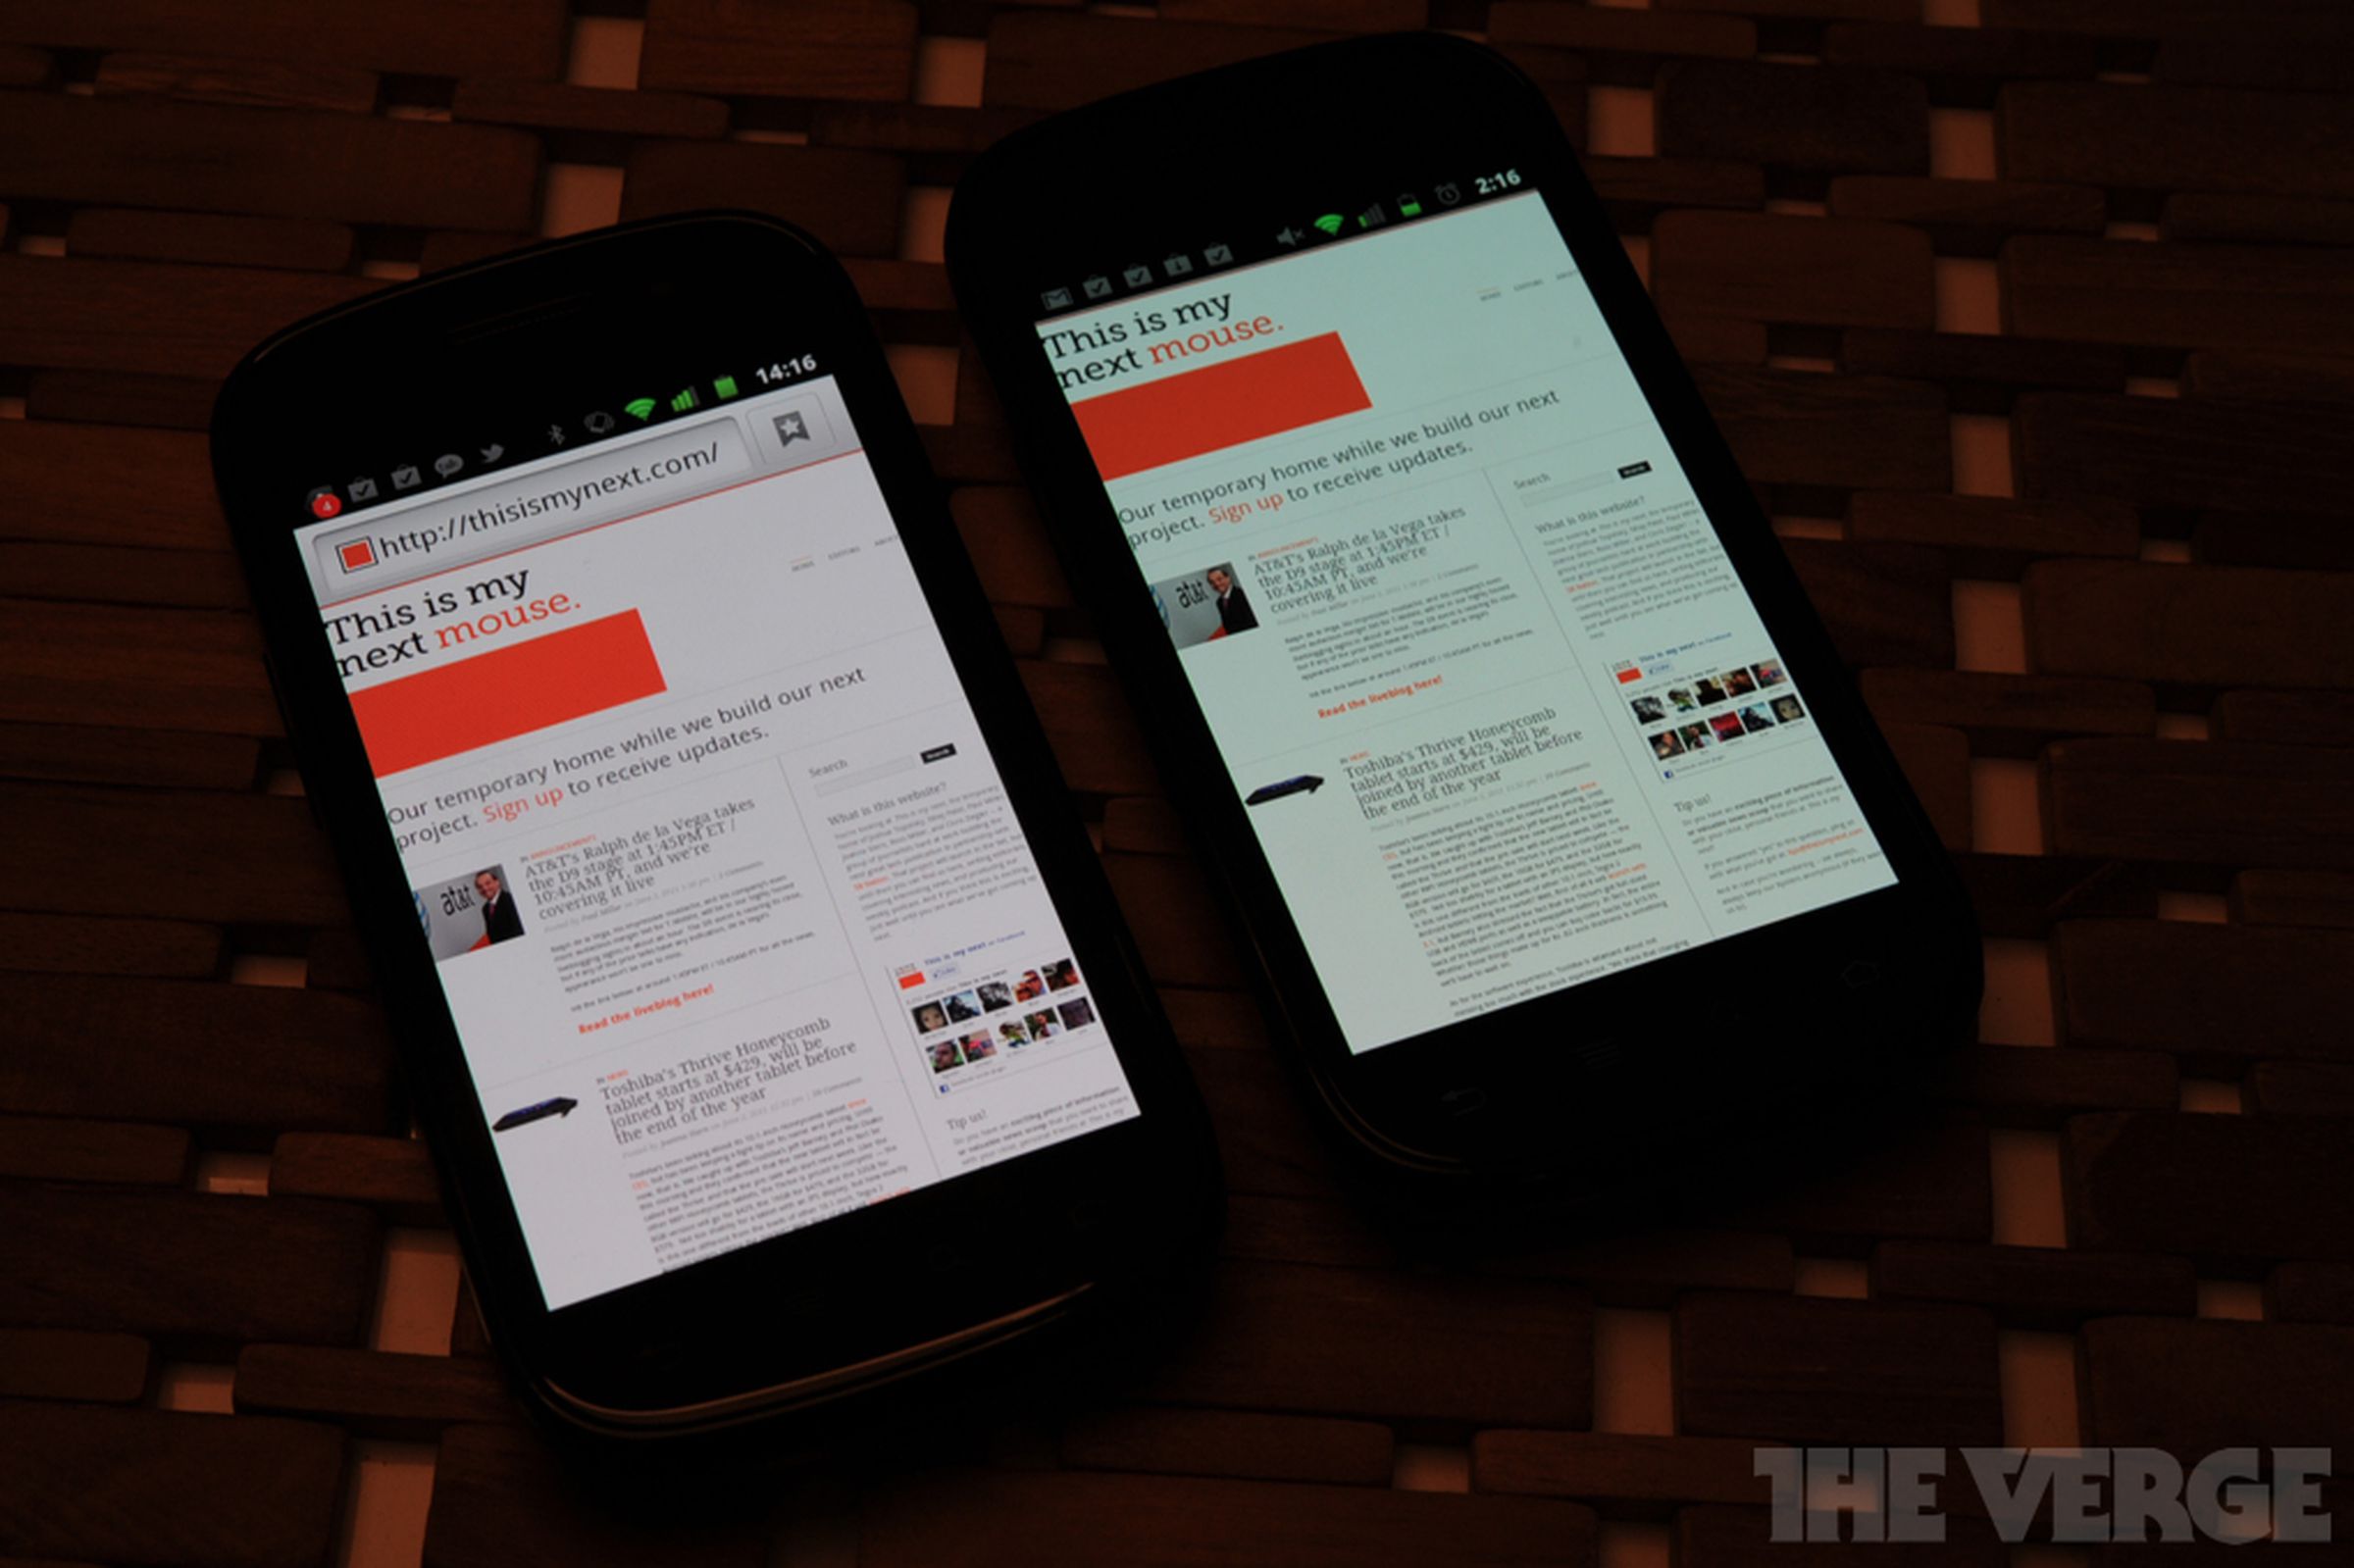 Google Nexus S 4G: a quick look